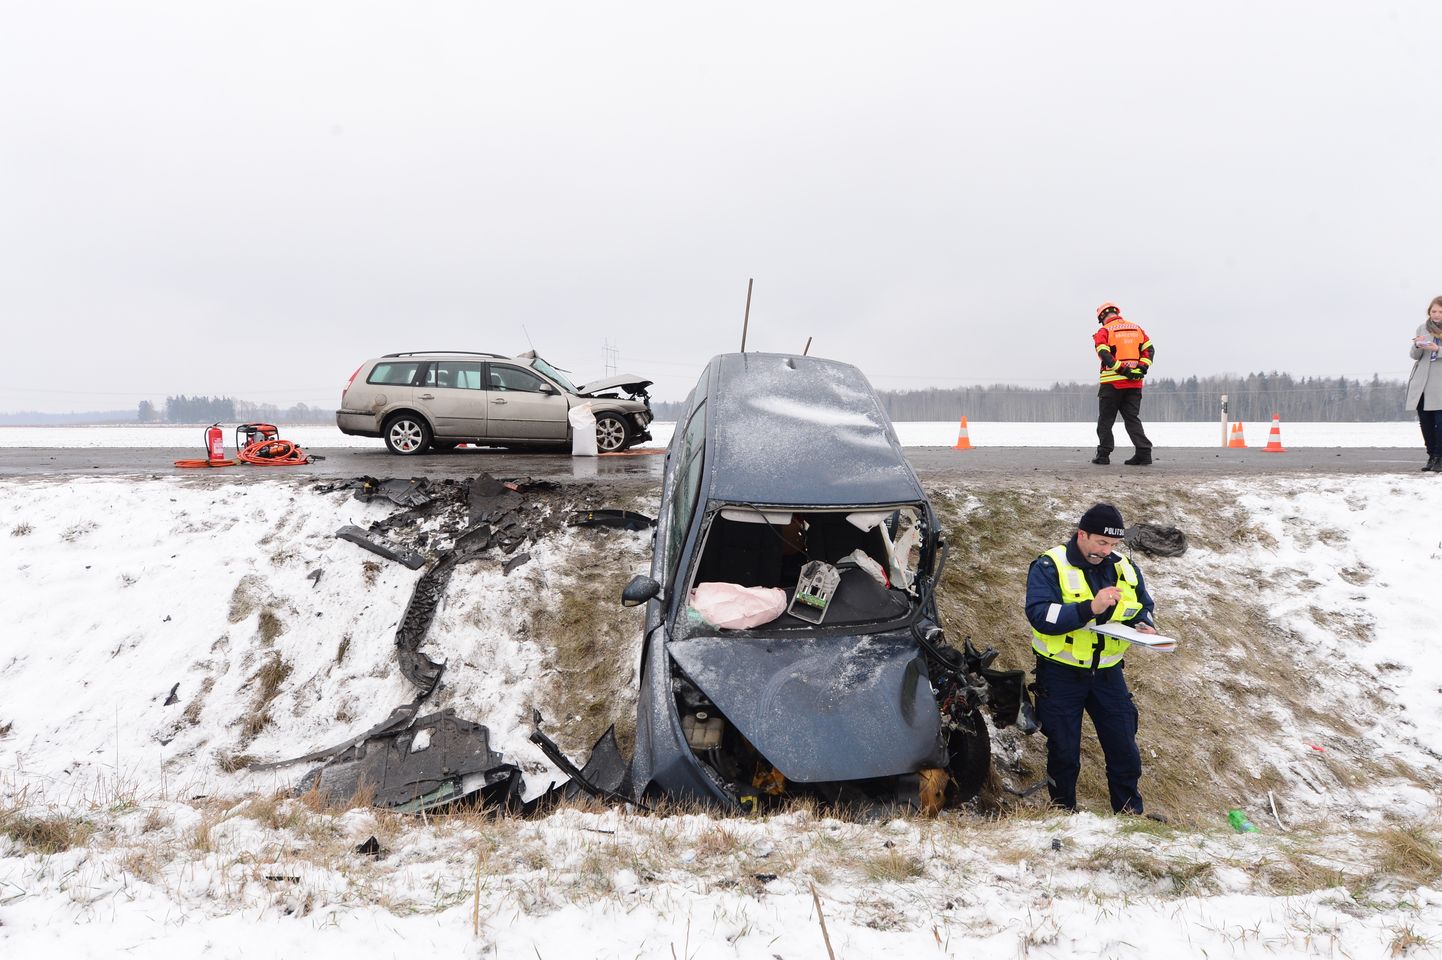 Rõhu külas Tartu-Viljandi maanteel sattus kokkupõrkesse kaks sõiduautot. Avarii tõttu hukkusid kaks inimest.